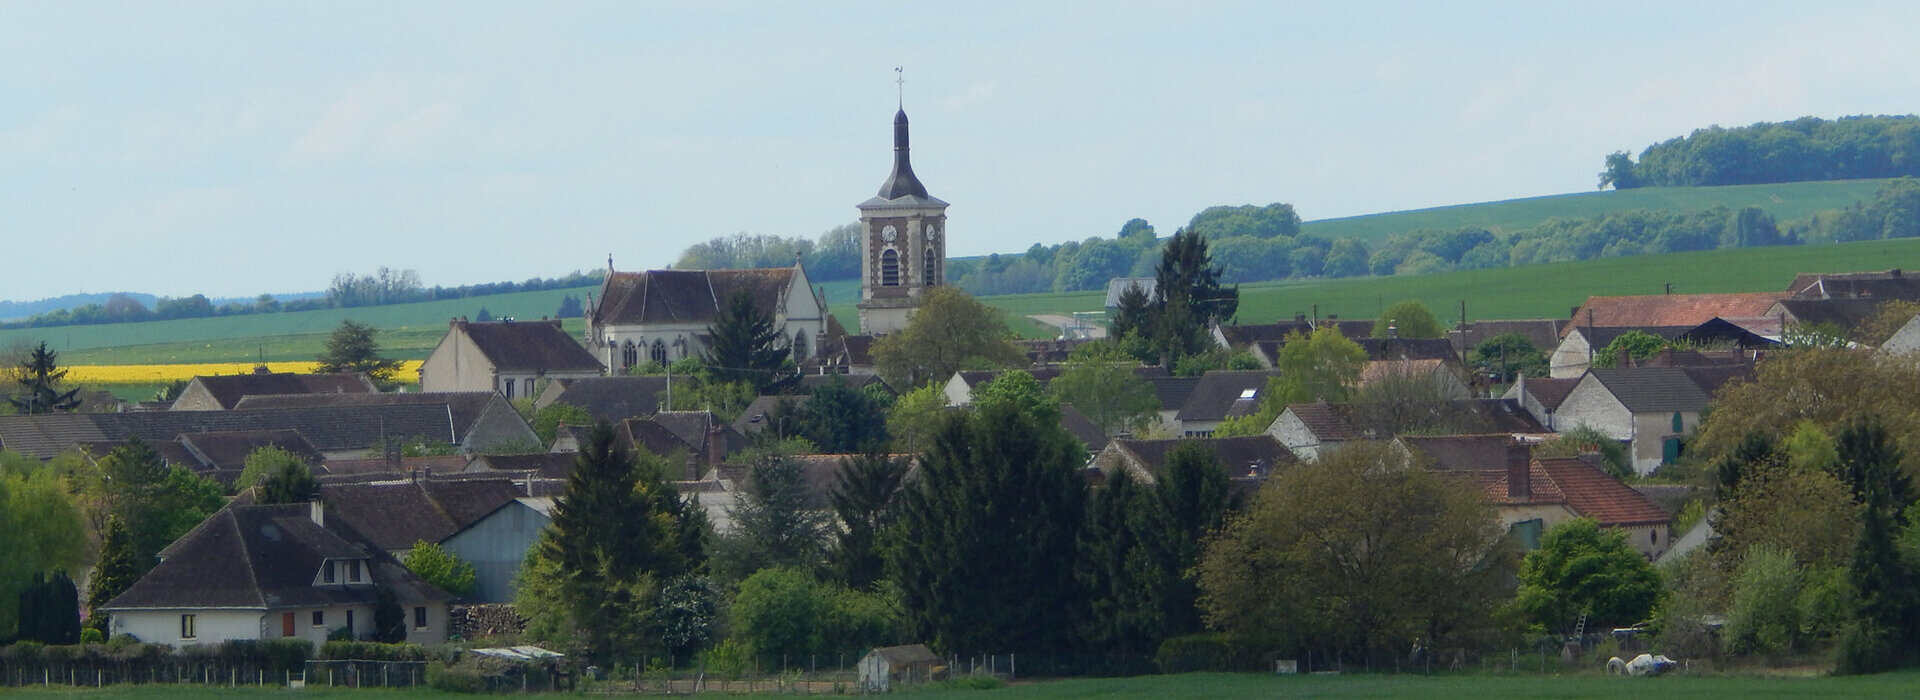 Commune de Brion dans l'Yonne